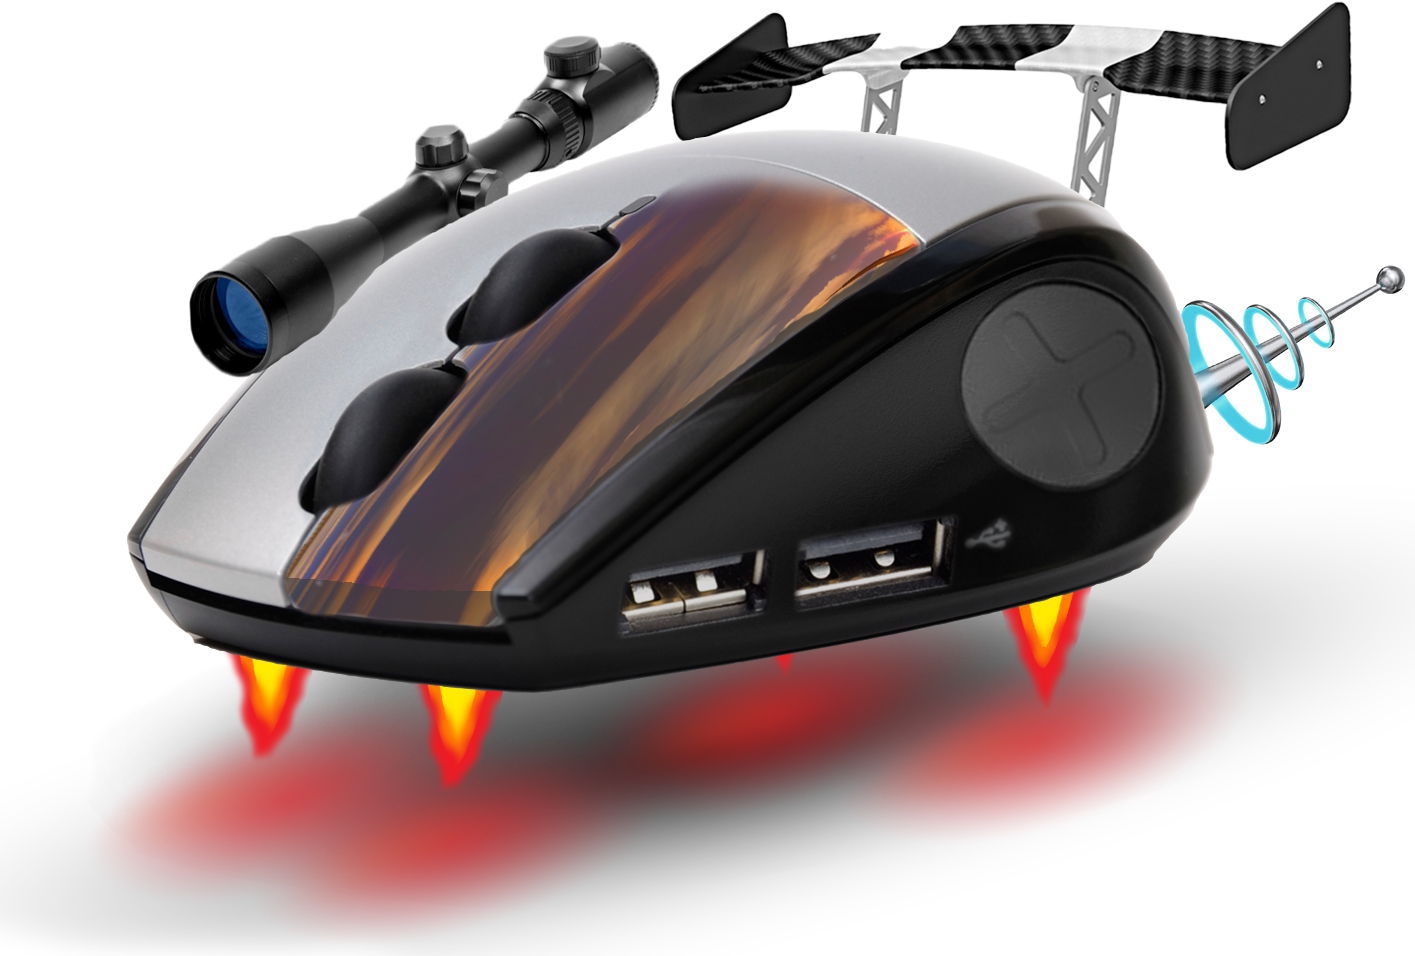 Die Maus der Zukunft, komplett mit Düsen, Zielfernrohr und USB-Anschlüssen